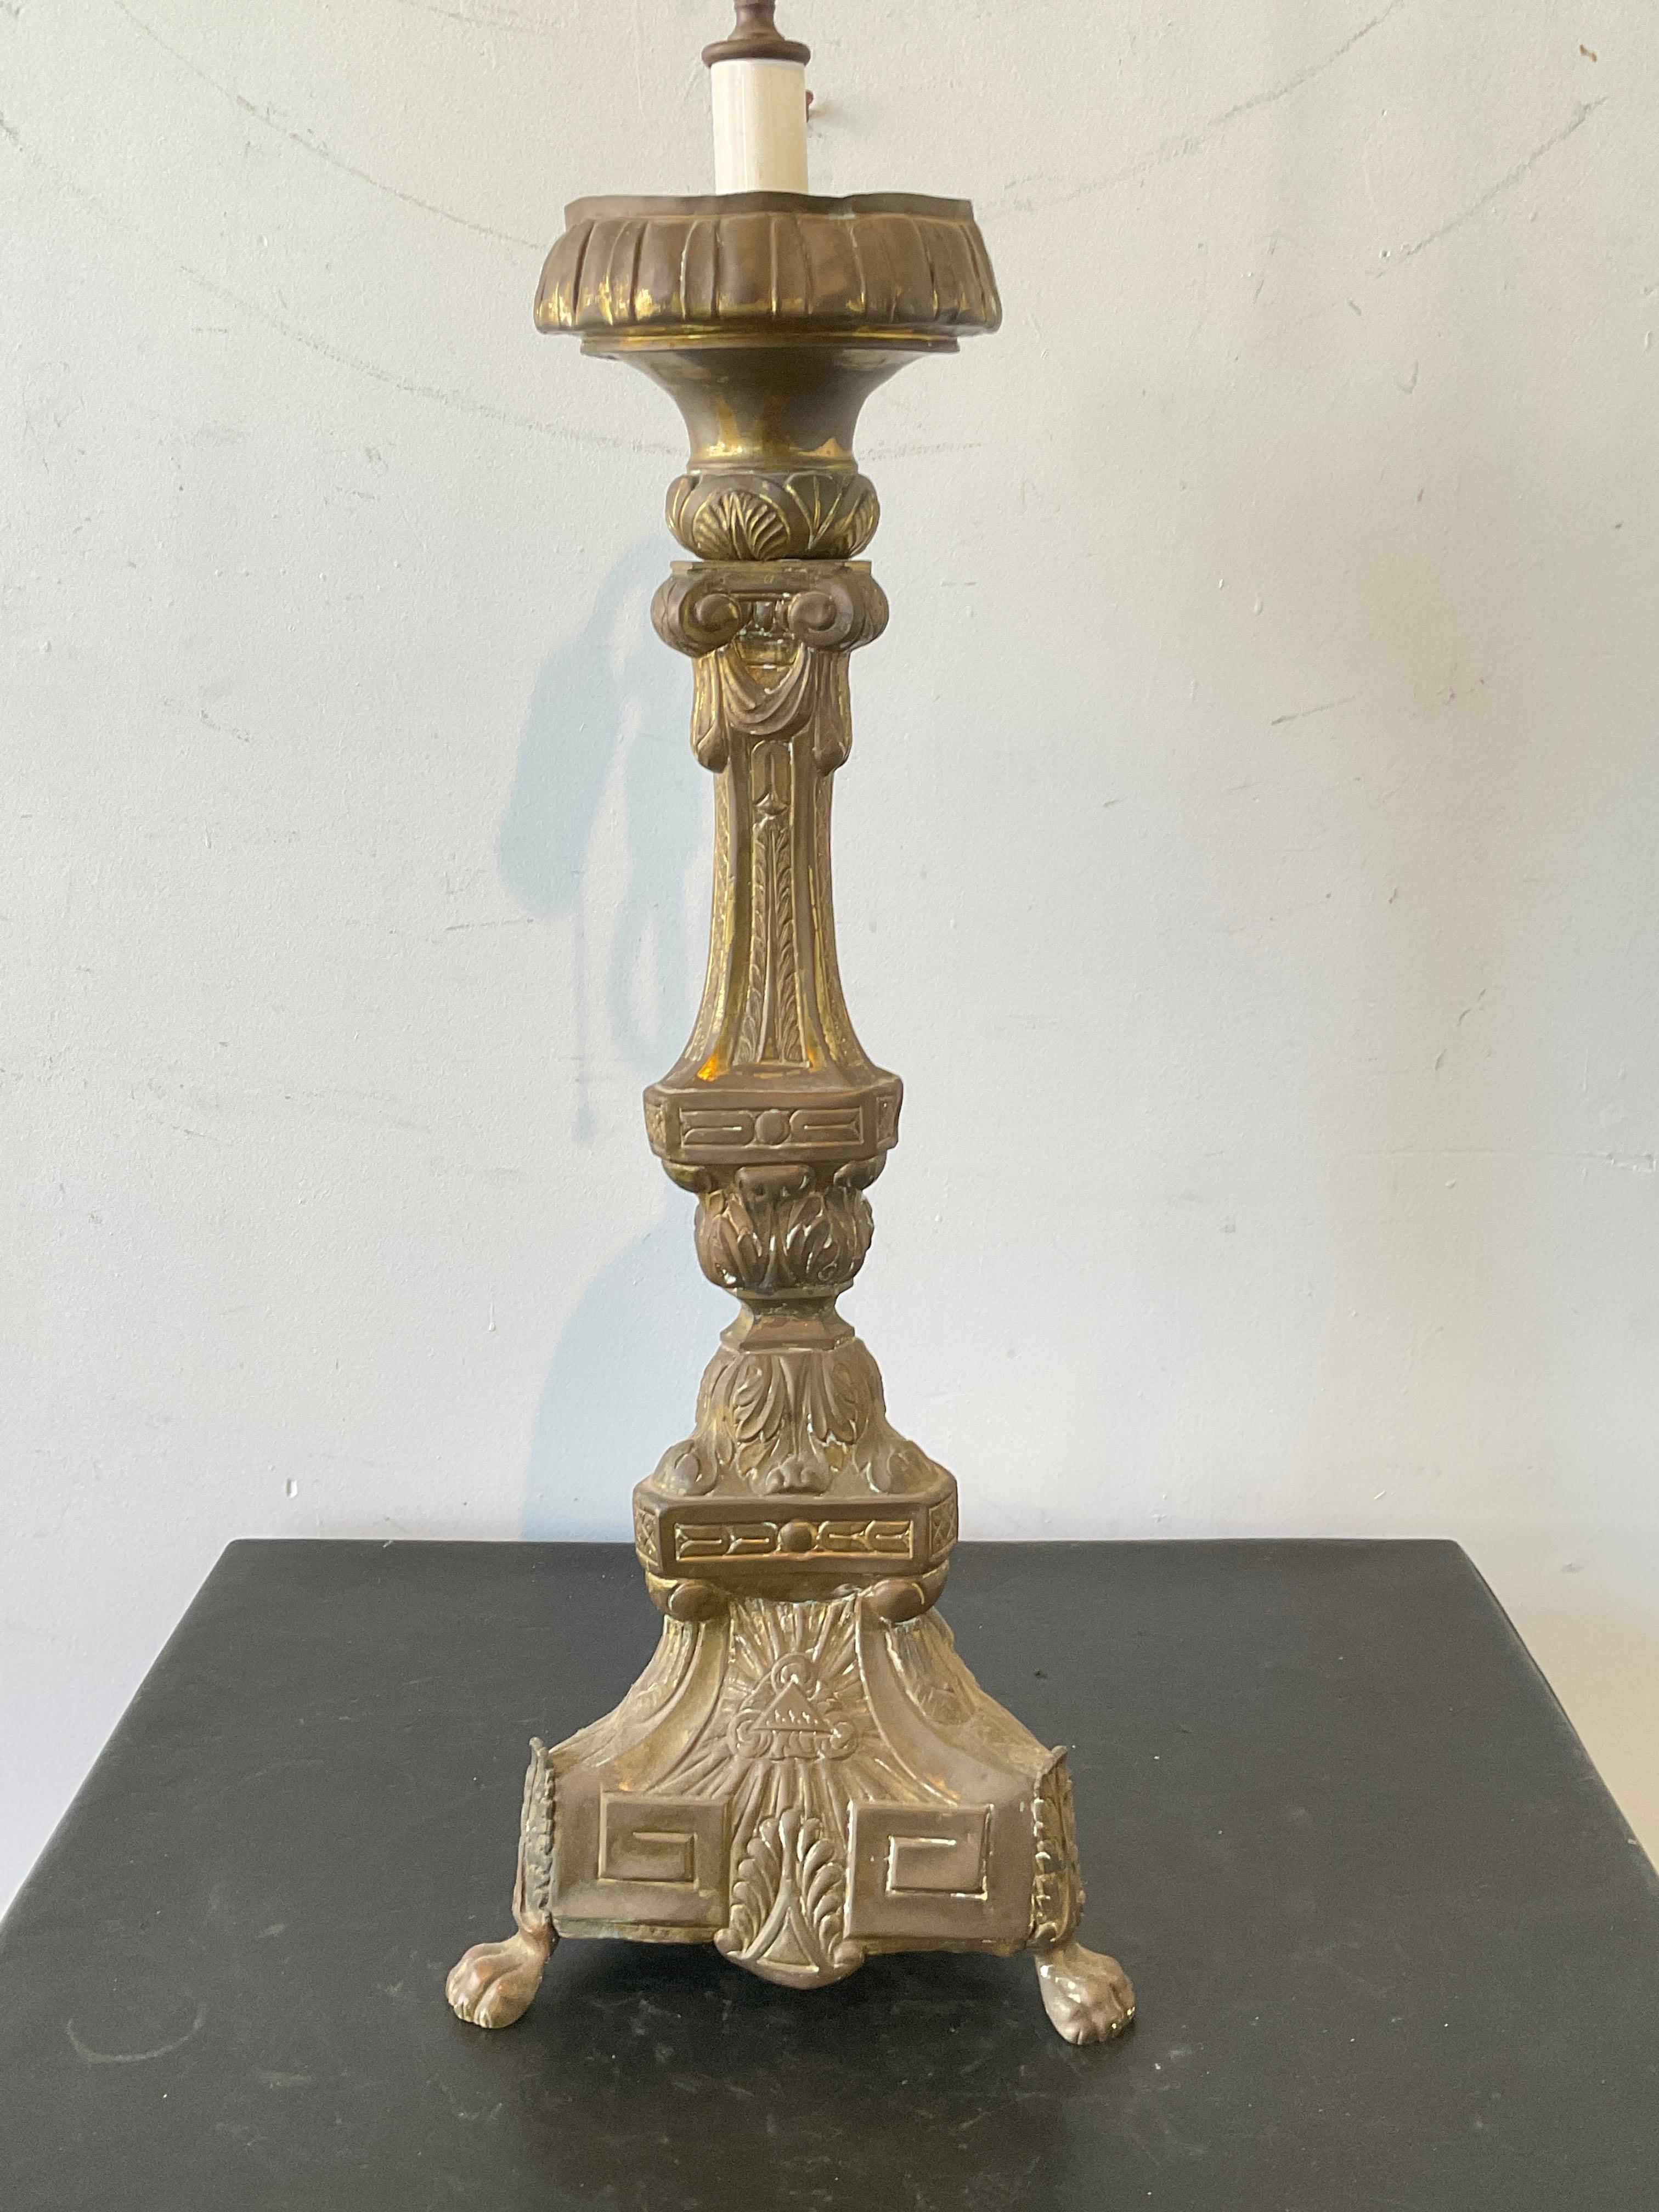 1880s Brass church candlestick lamp.